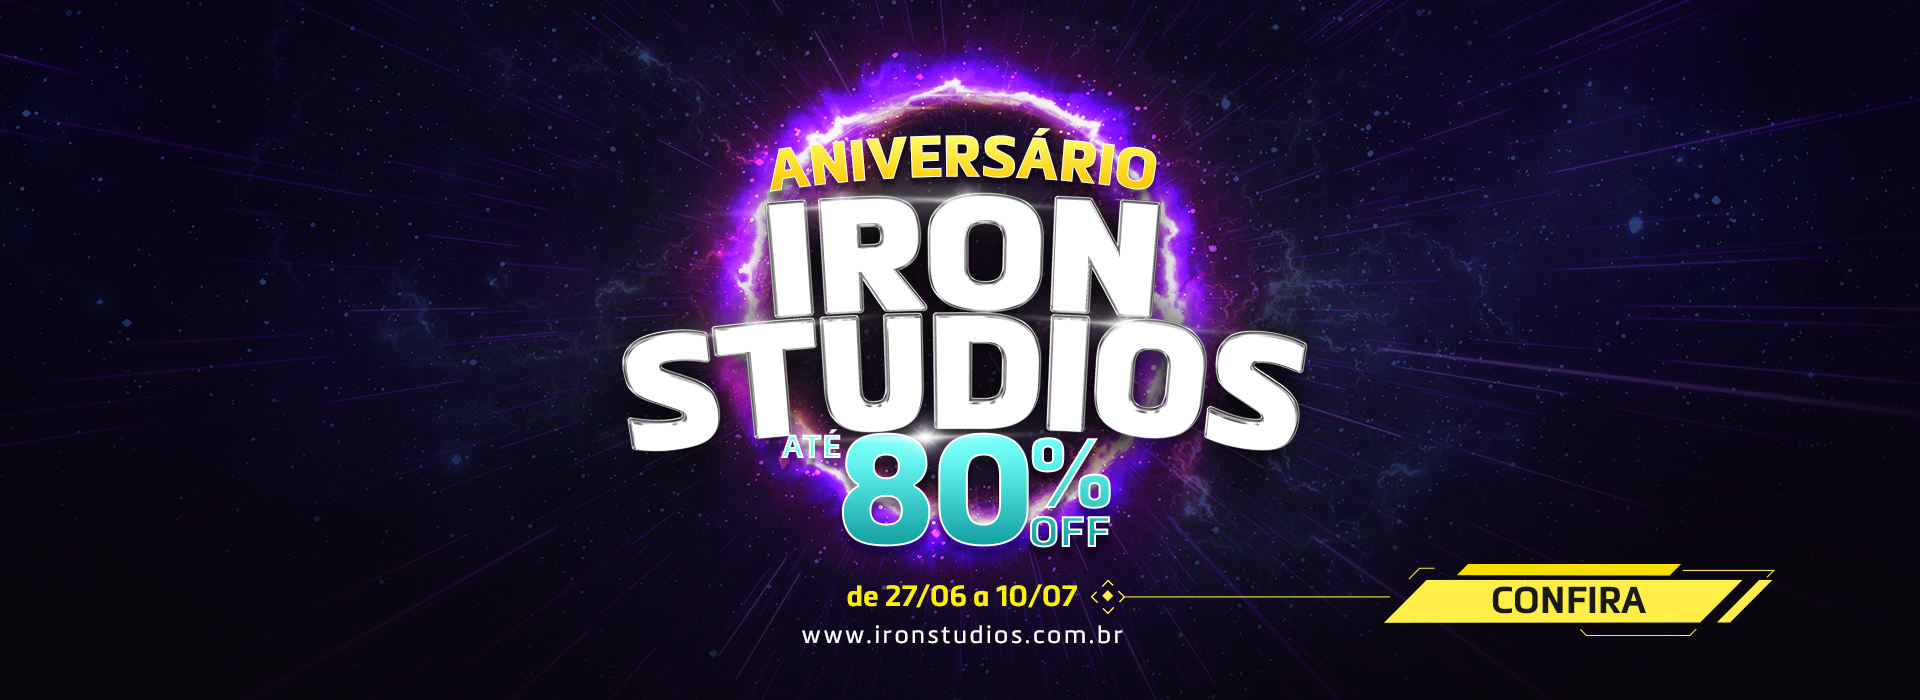 Aniversário Iron Studios